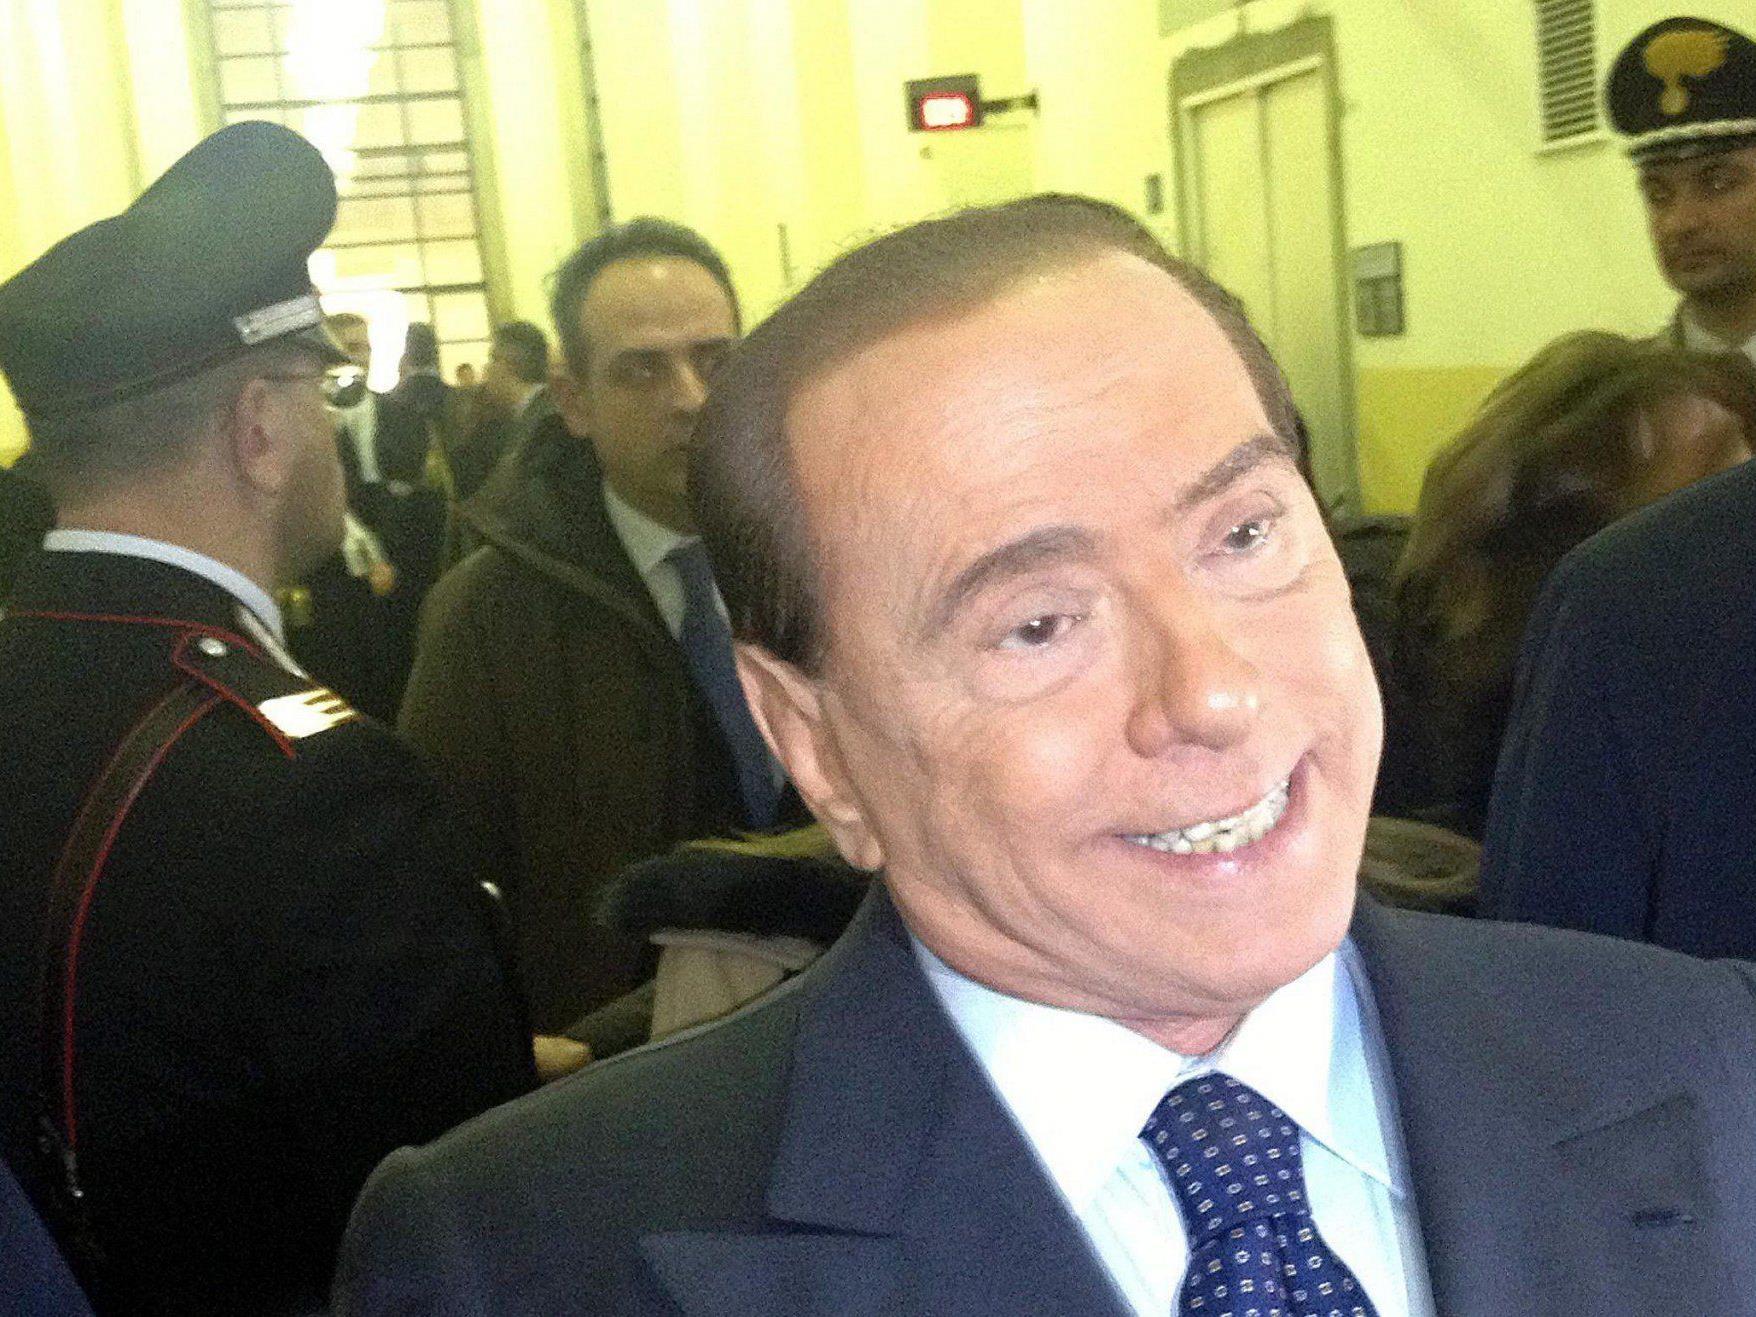 Das Urteil im Unipol-Prozess lautet ein Jahr Haft gegen Silvio Berlusconi.